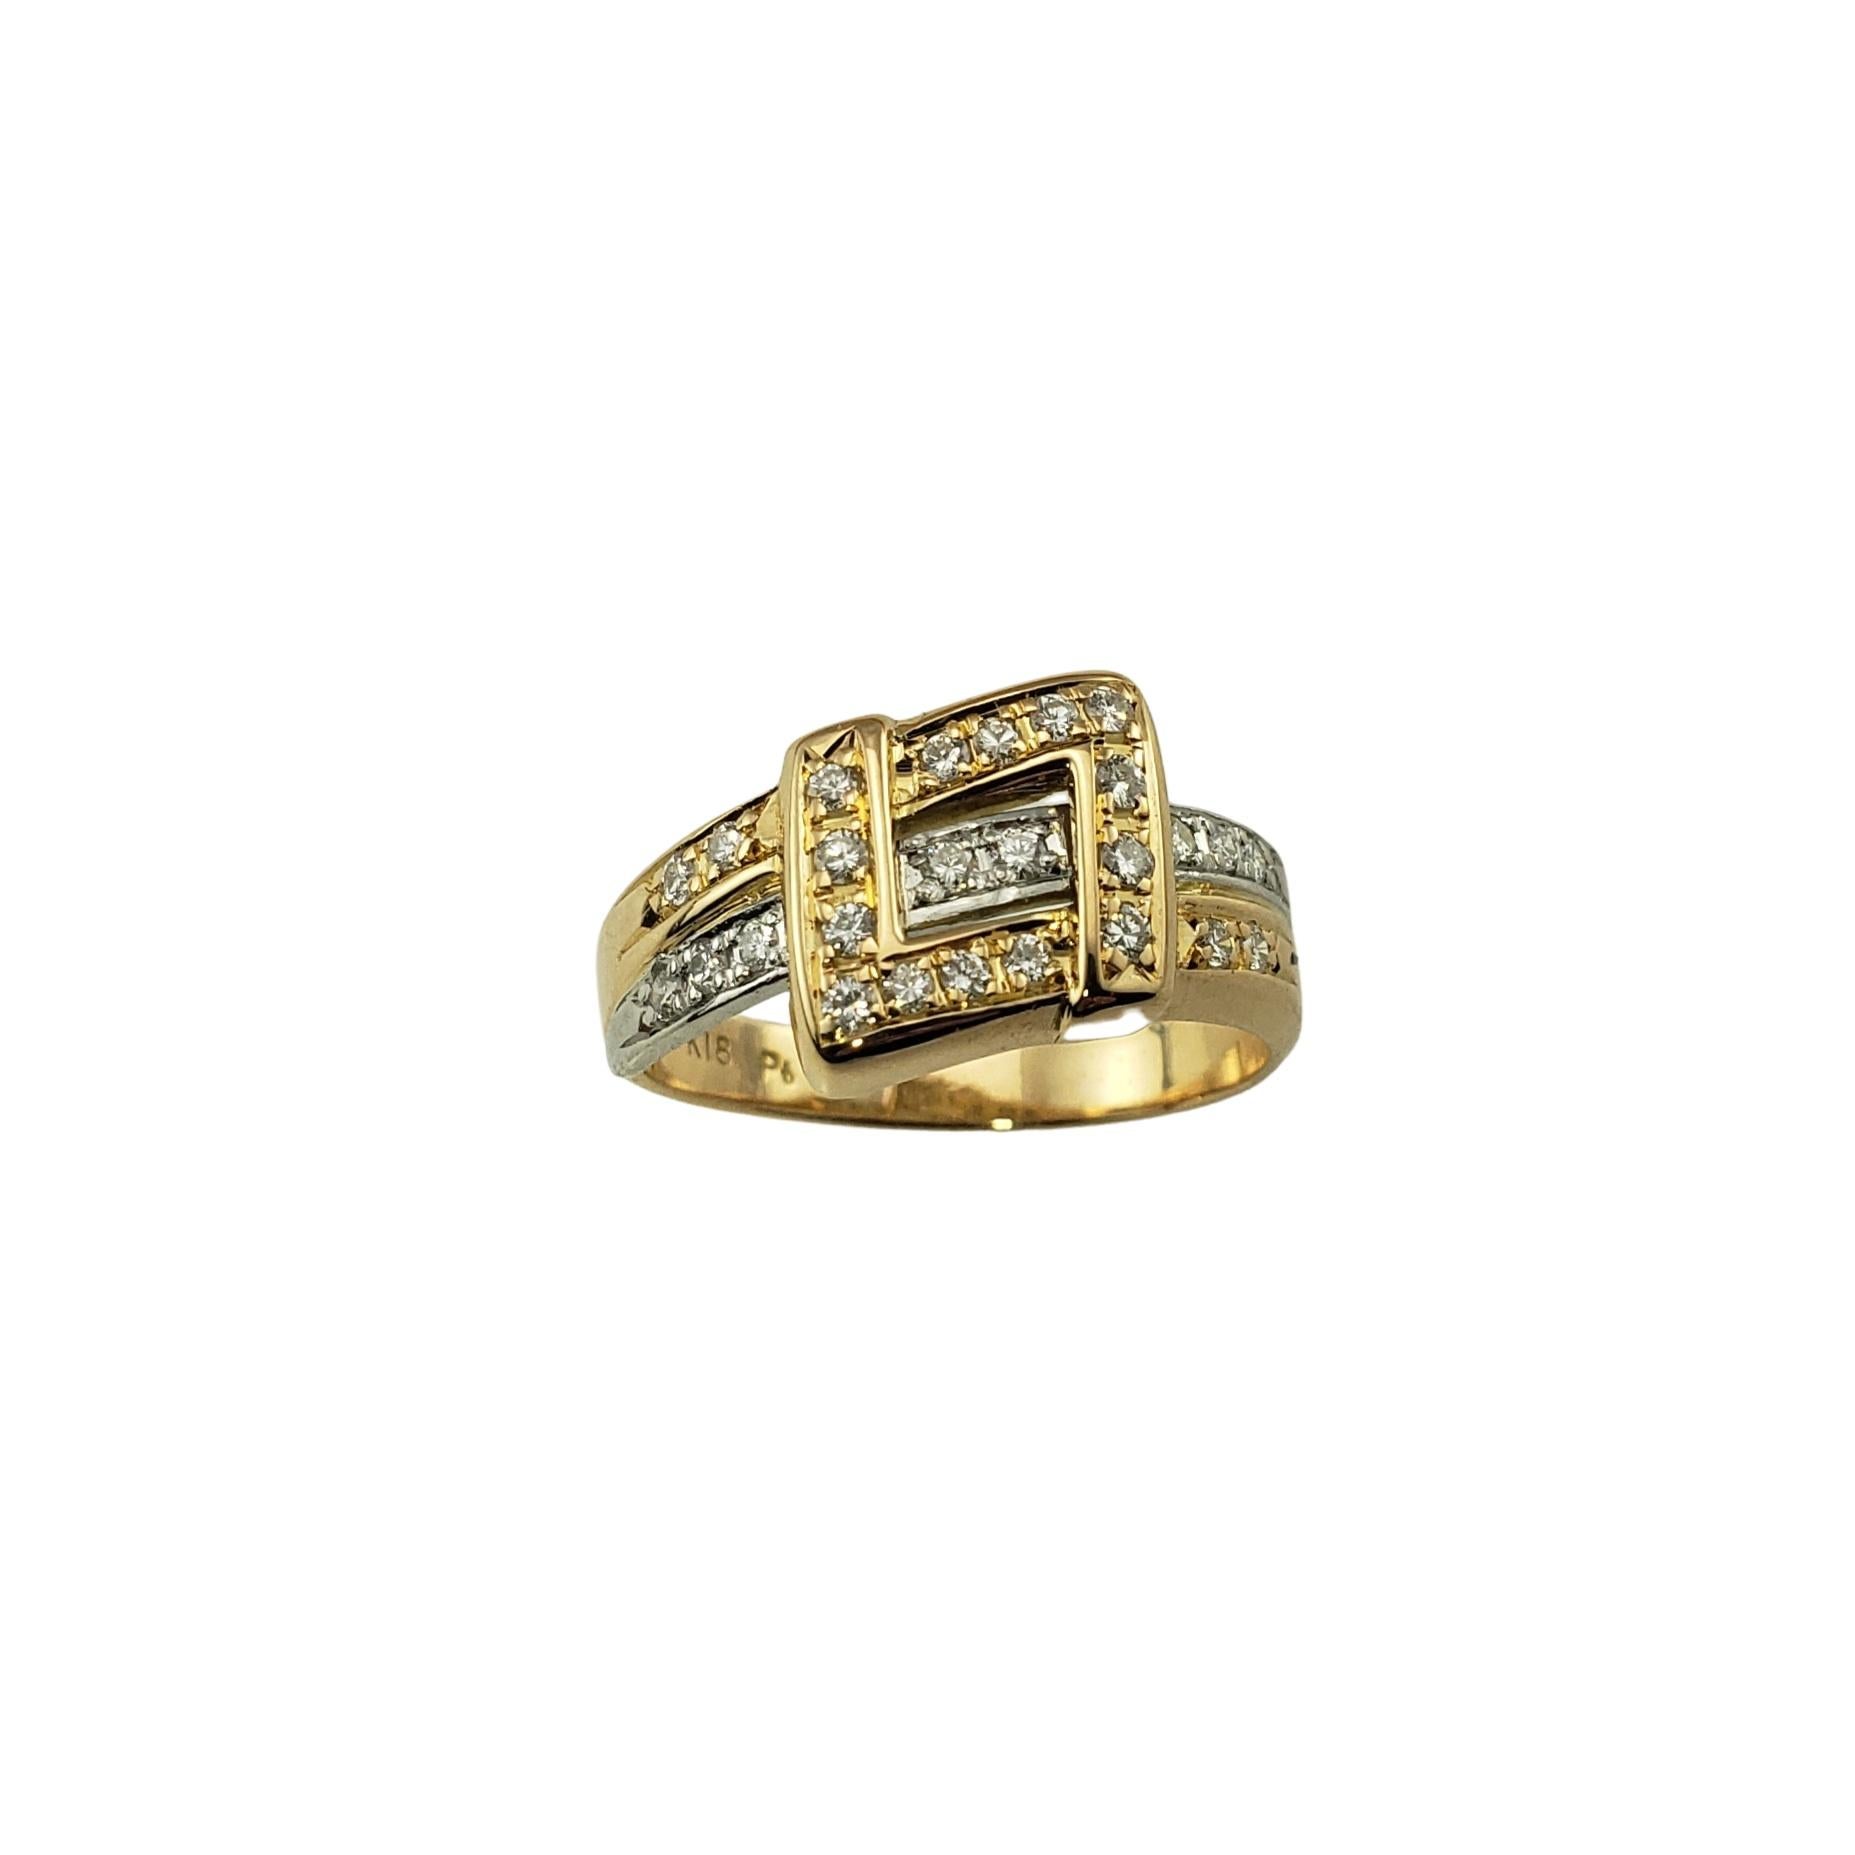 18 Karat Gelb-/Weißgold und Diamantring Größe 7,25-

Dieser atemberaubende Ring ist mit 26 runden Diamanten im Brillantschliff besetzt, die in wunderschön detailliertes 18-karätiges Gelb- und Weißgold gefasst sind.  Breite:  9 mm.
Schaft:  3